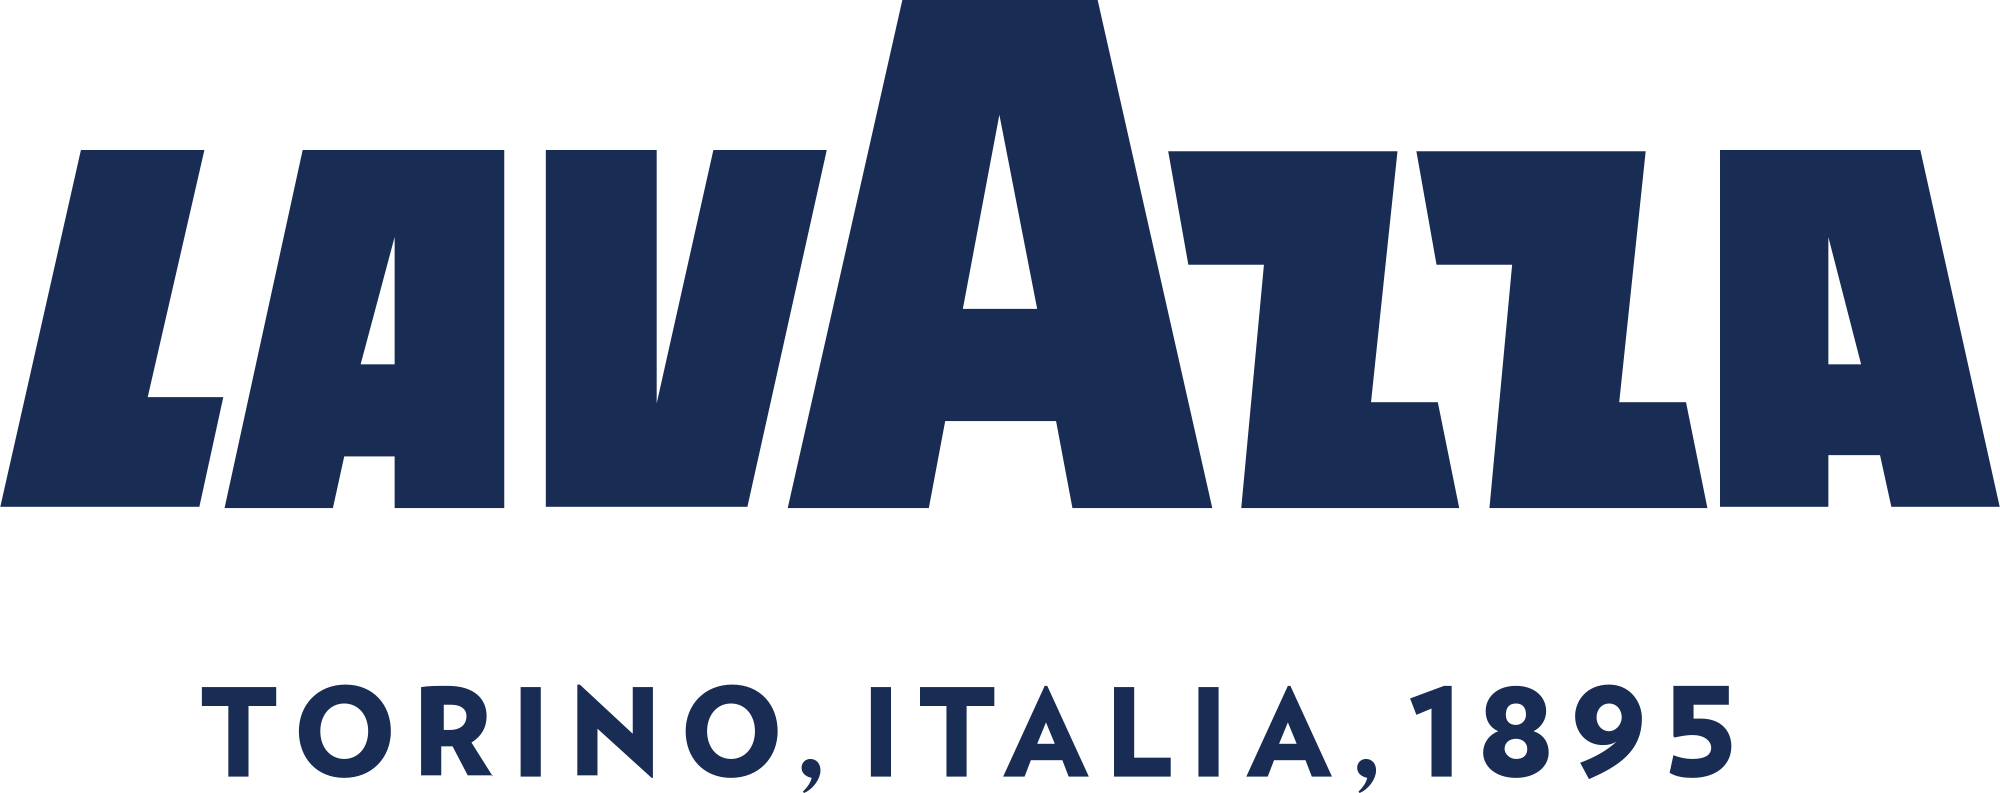 logo lavazza, café italien sélectionné par l'instant café by sodap